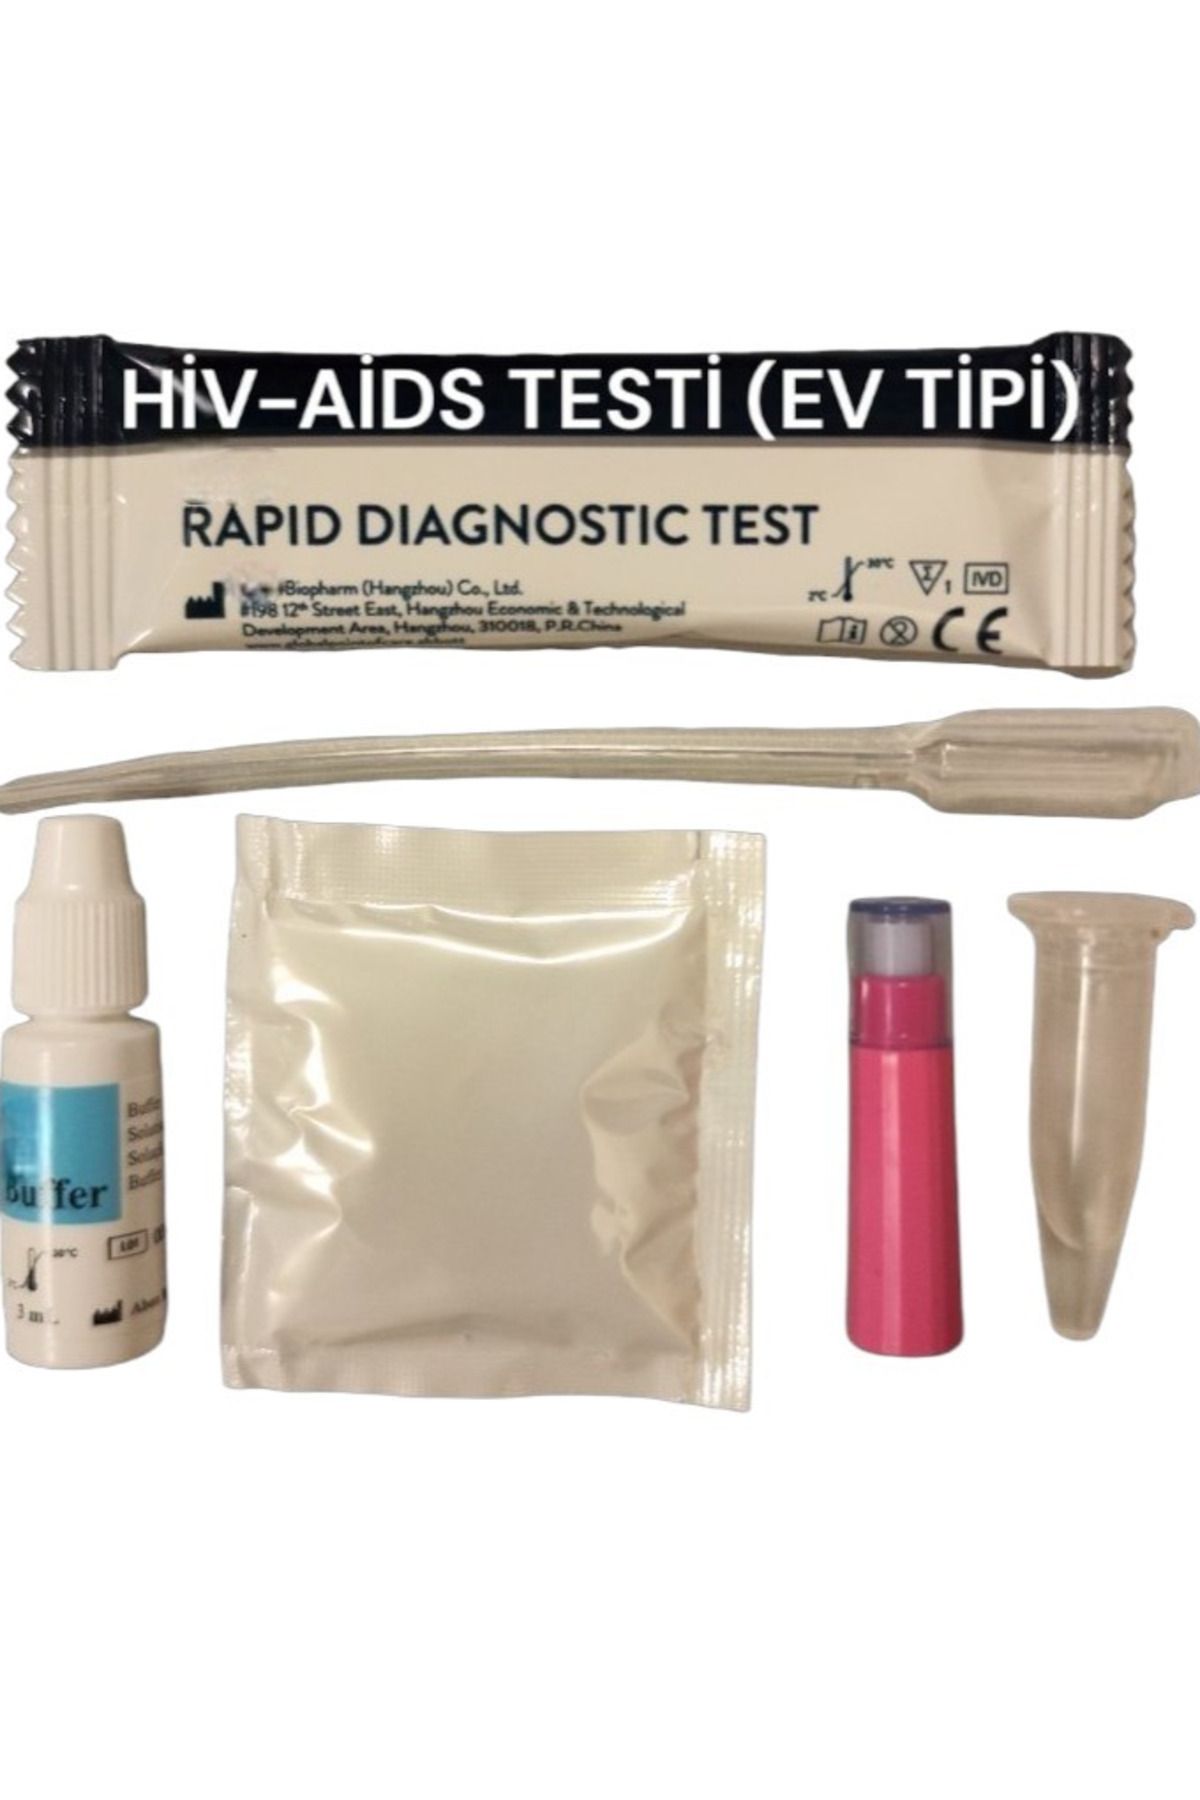 RASTMED EVDE 1/2 H?V-AIDS EV TİPİ RST